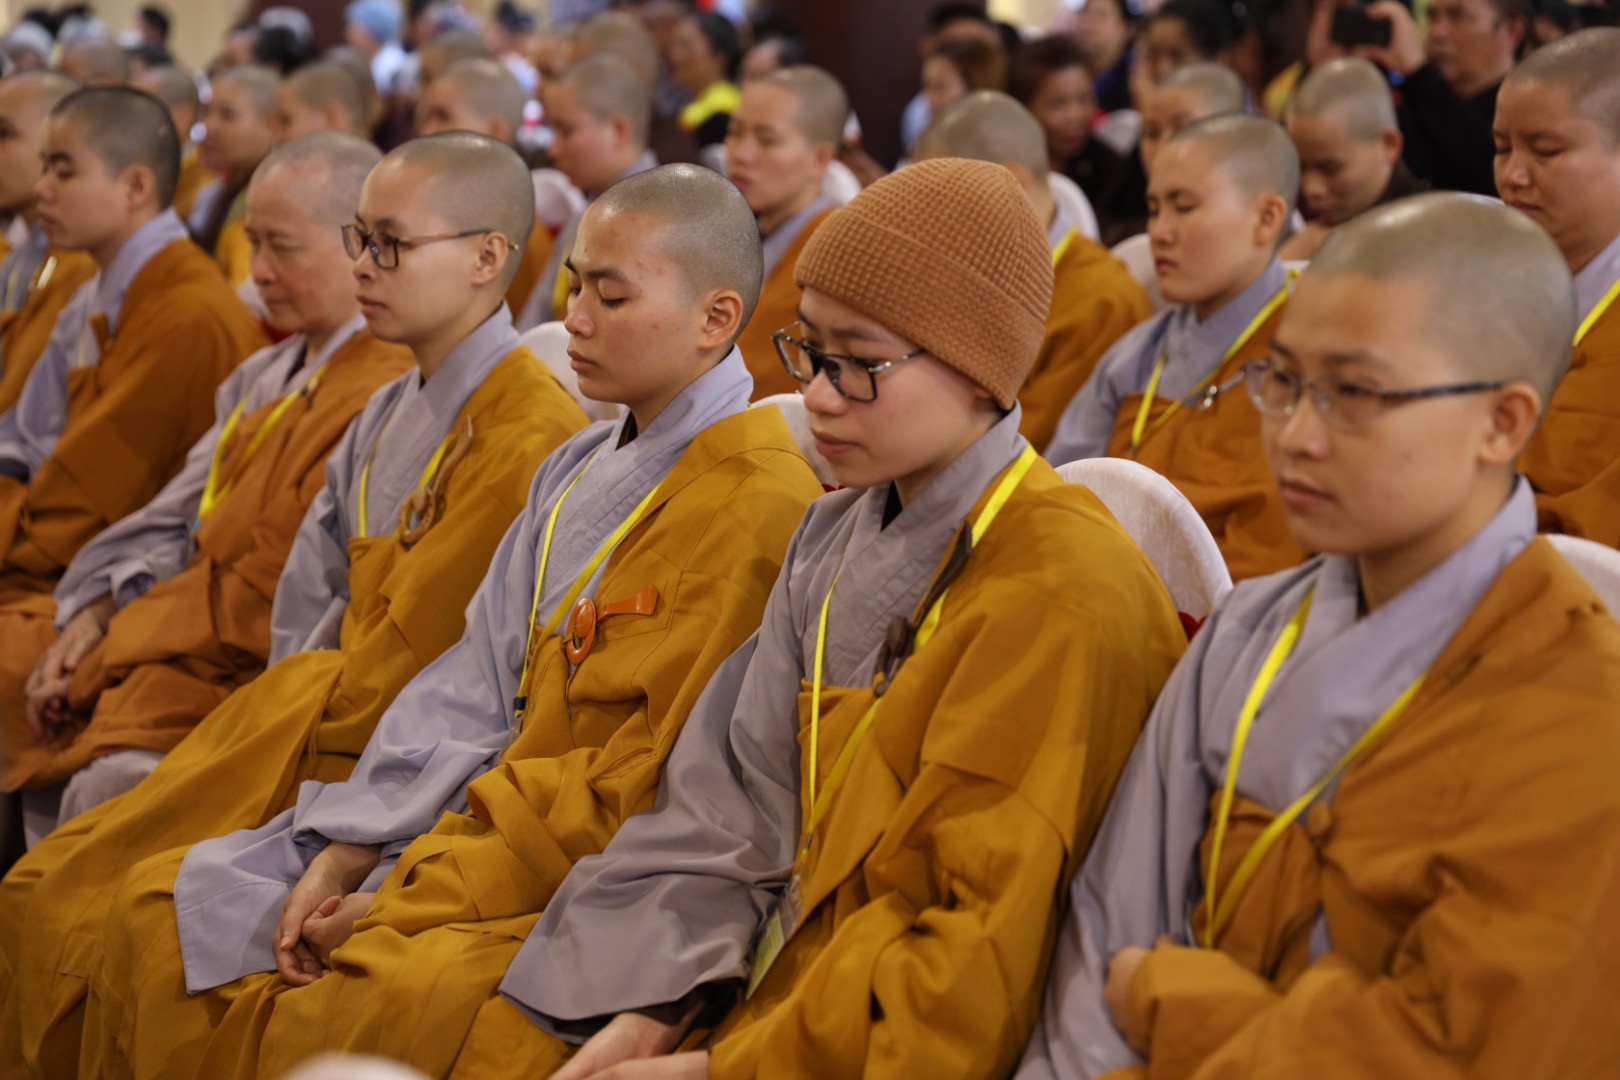 Học viện Phật giáo Việt Nam tại Hà Nội tuyển sinh đào tạo trình độ Thạc sĩ, Tiến sĩ Phật học năm 2020 